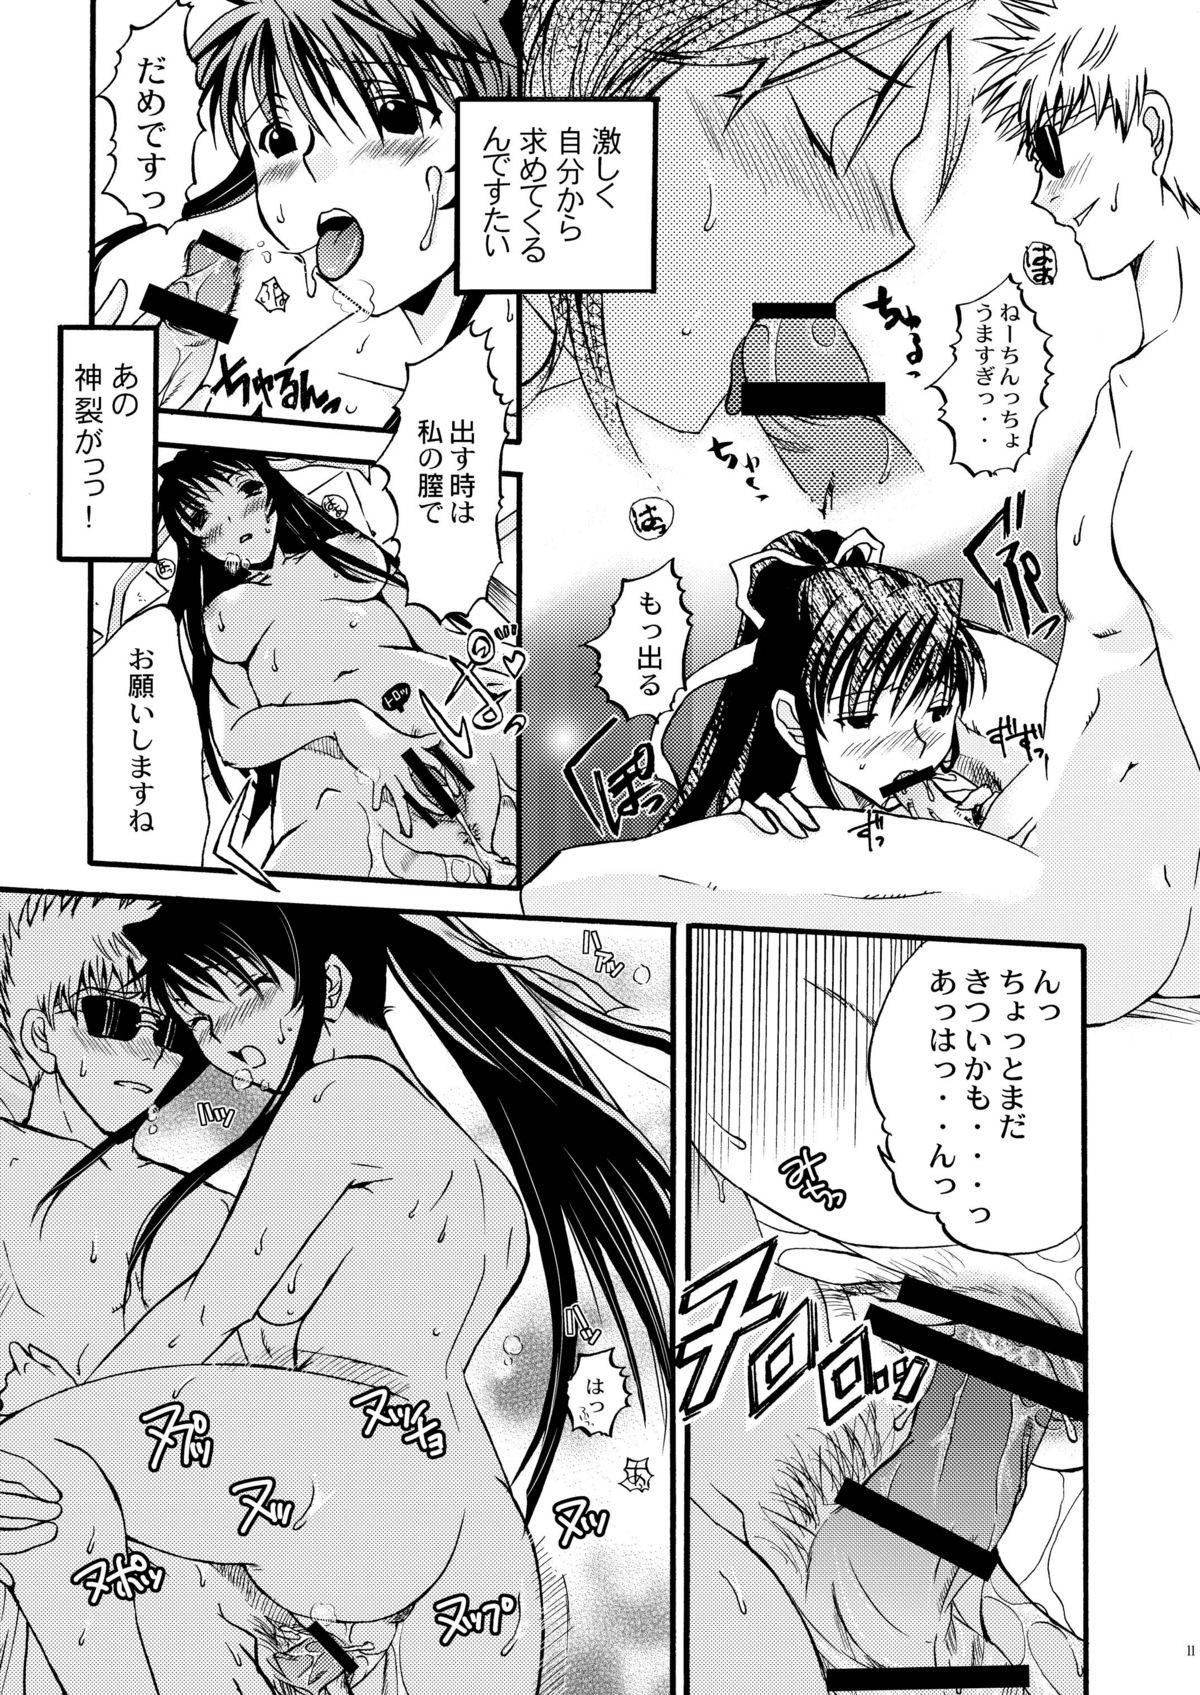 Romantic Kanzaki SPECIAL - Toaru majutsu no index Men - Page 12